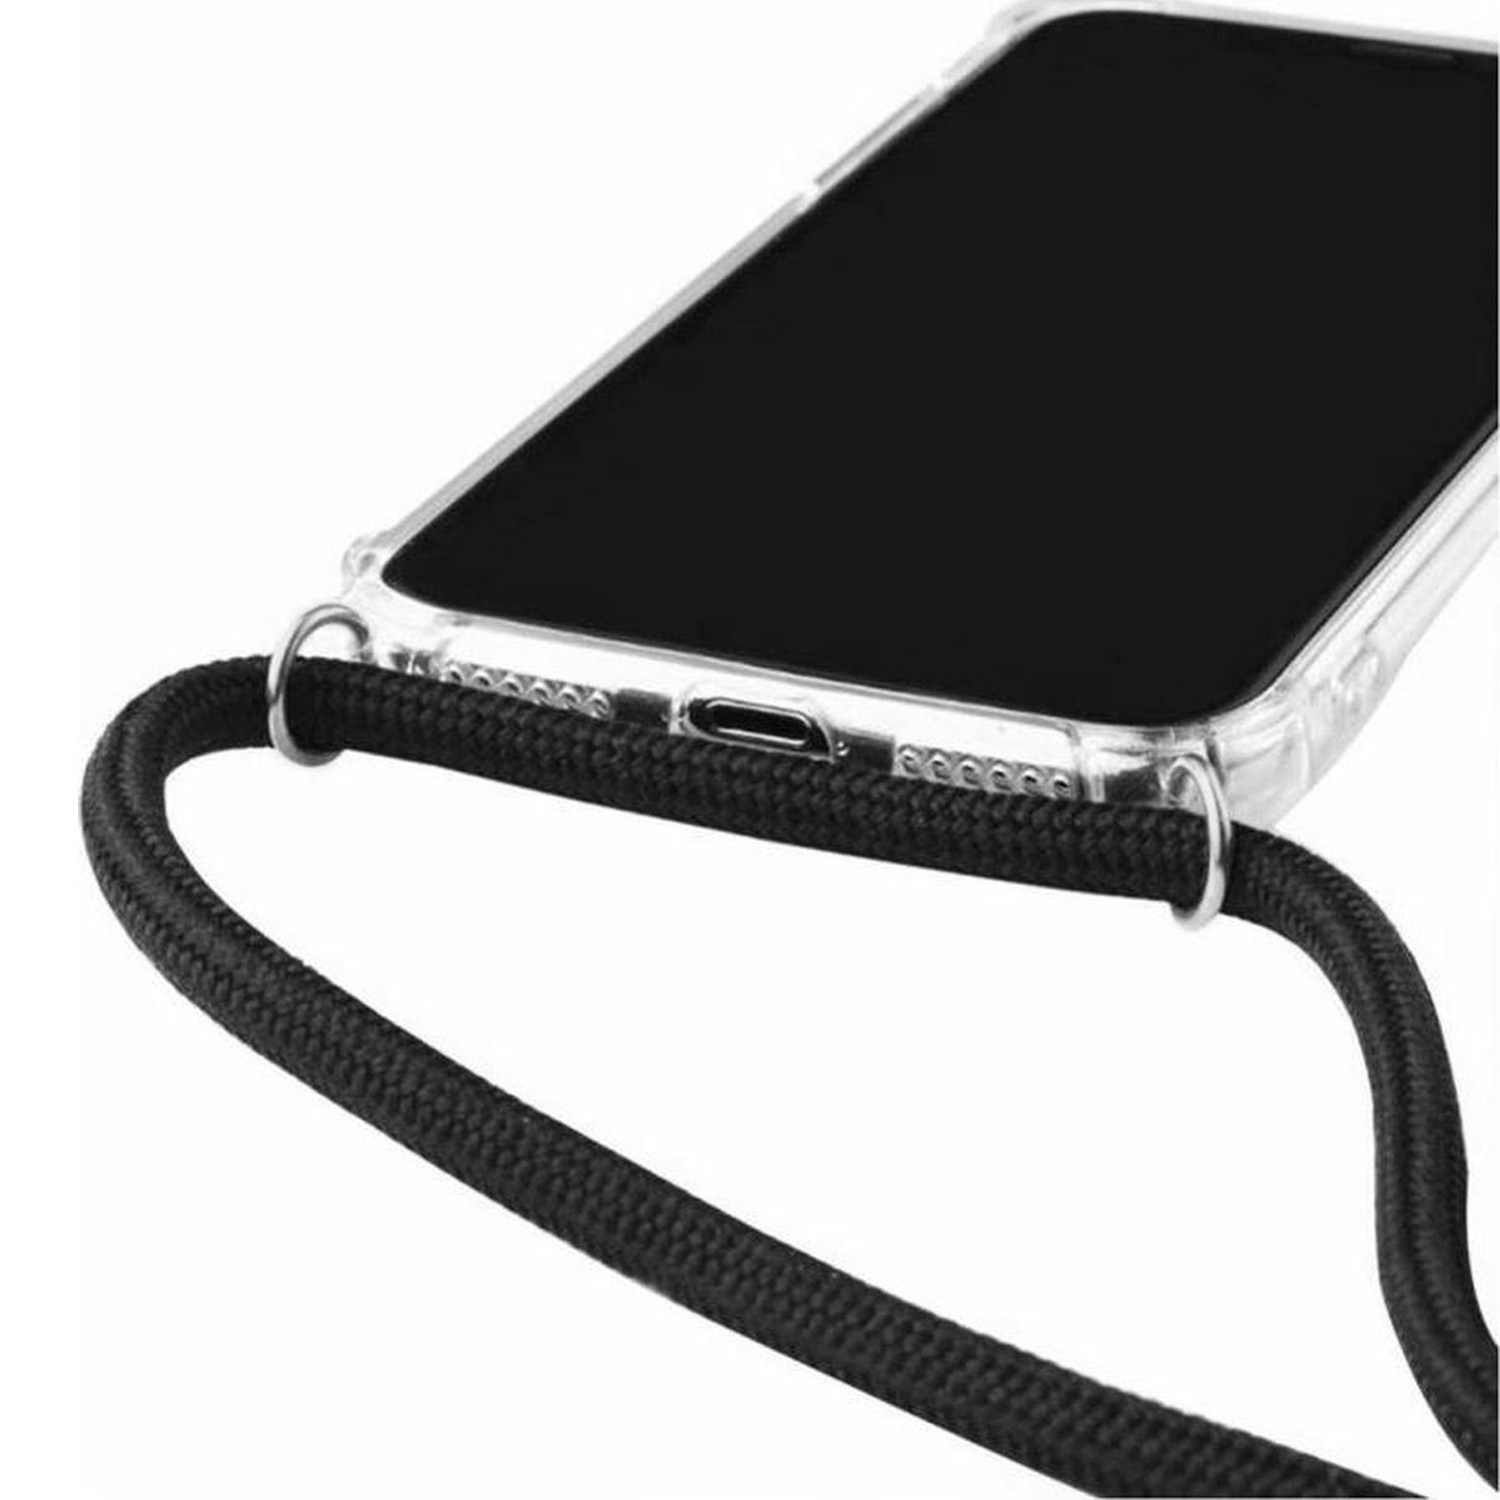 Leuke Telefoonhoesjes iPhone 14 Pro hoesje met koord - Oceaan